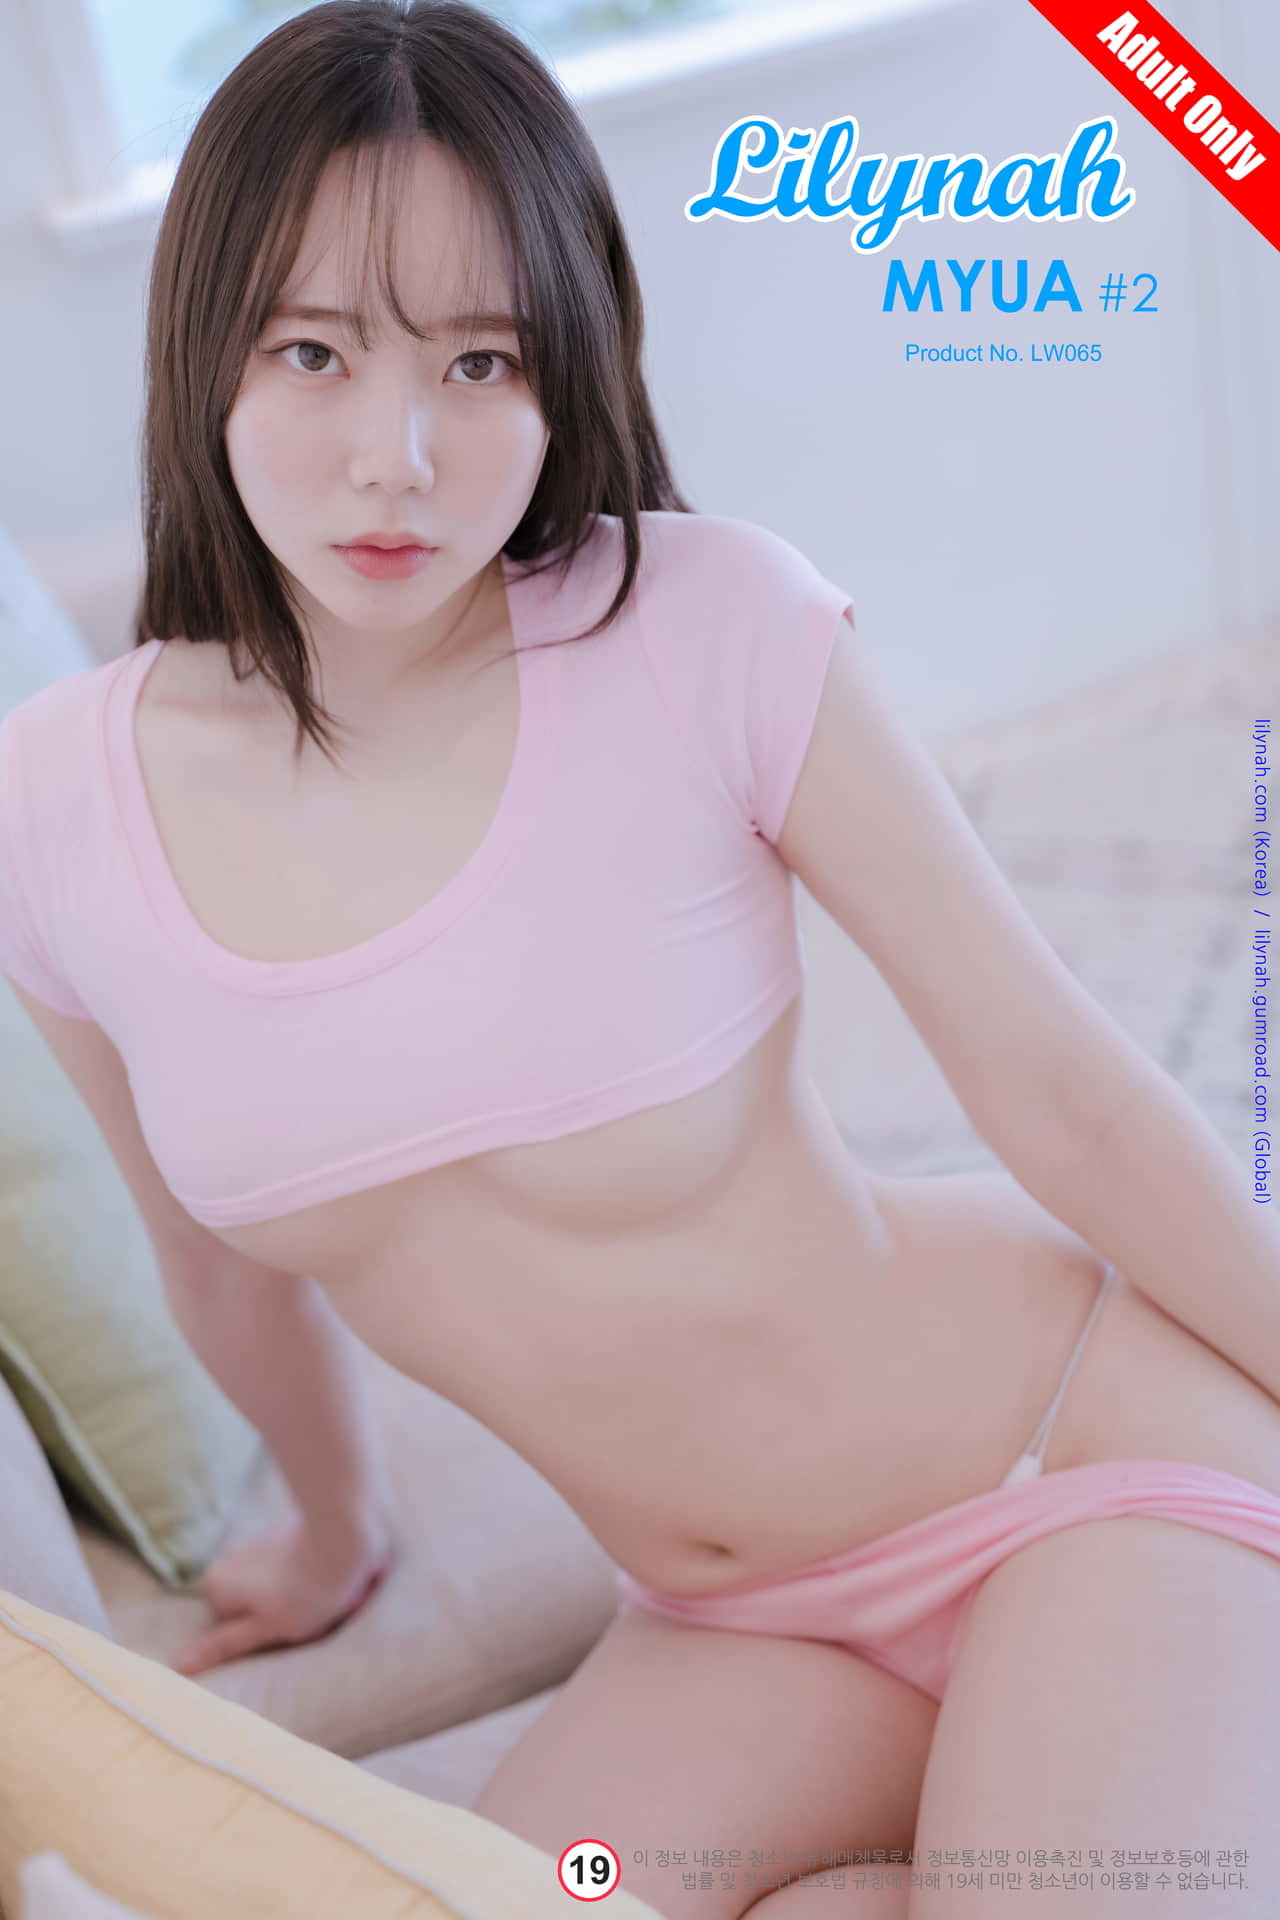 [릴리나] 뮤아 (뮤아) Vol.02 - part 01 [LW65] – Hot Pink